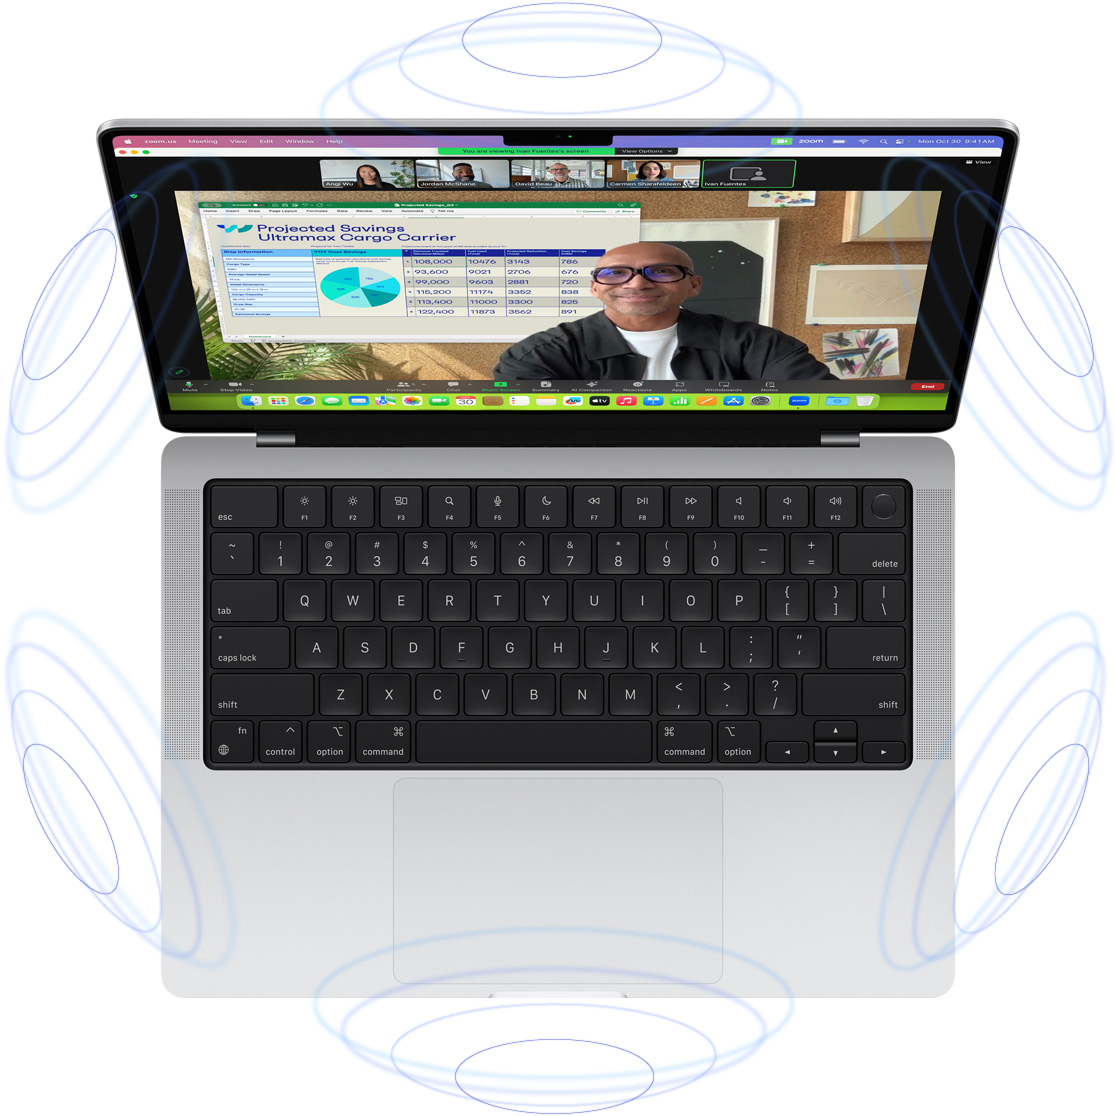 Βιντεοκλήση FaceTime σε MacBook Pro που περιβάλλεται από απεικονίσεις μπλε κύκλων οι οποίες υποδηλώνουν την τρισδιάστατη αίσθηση του Χωρικού Ήχου